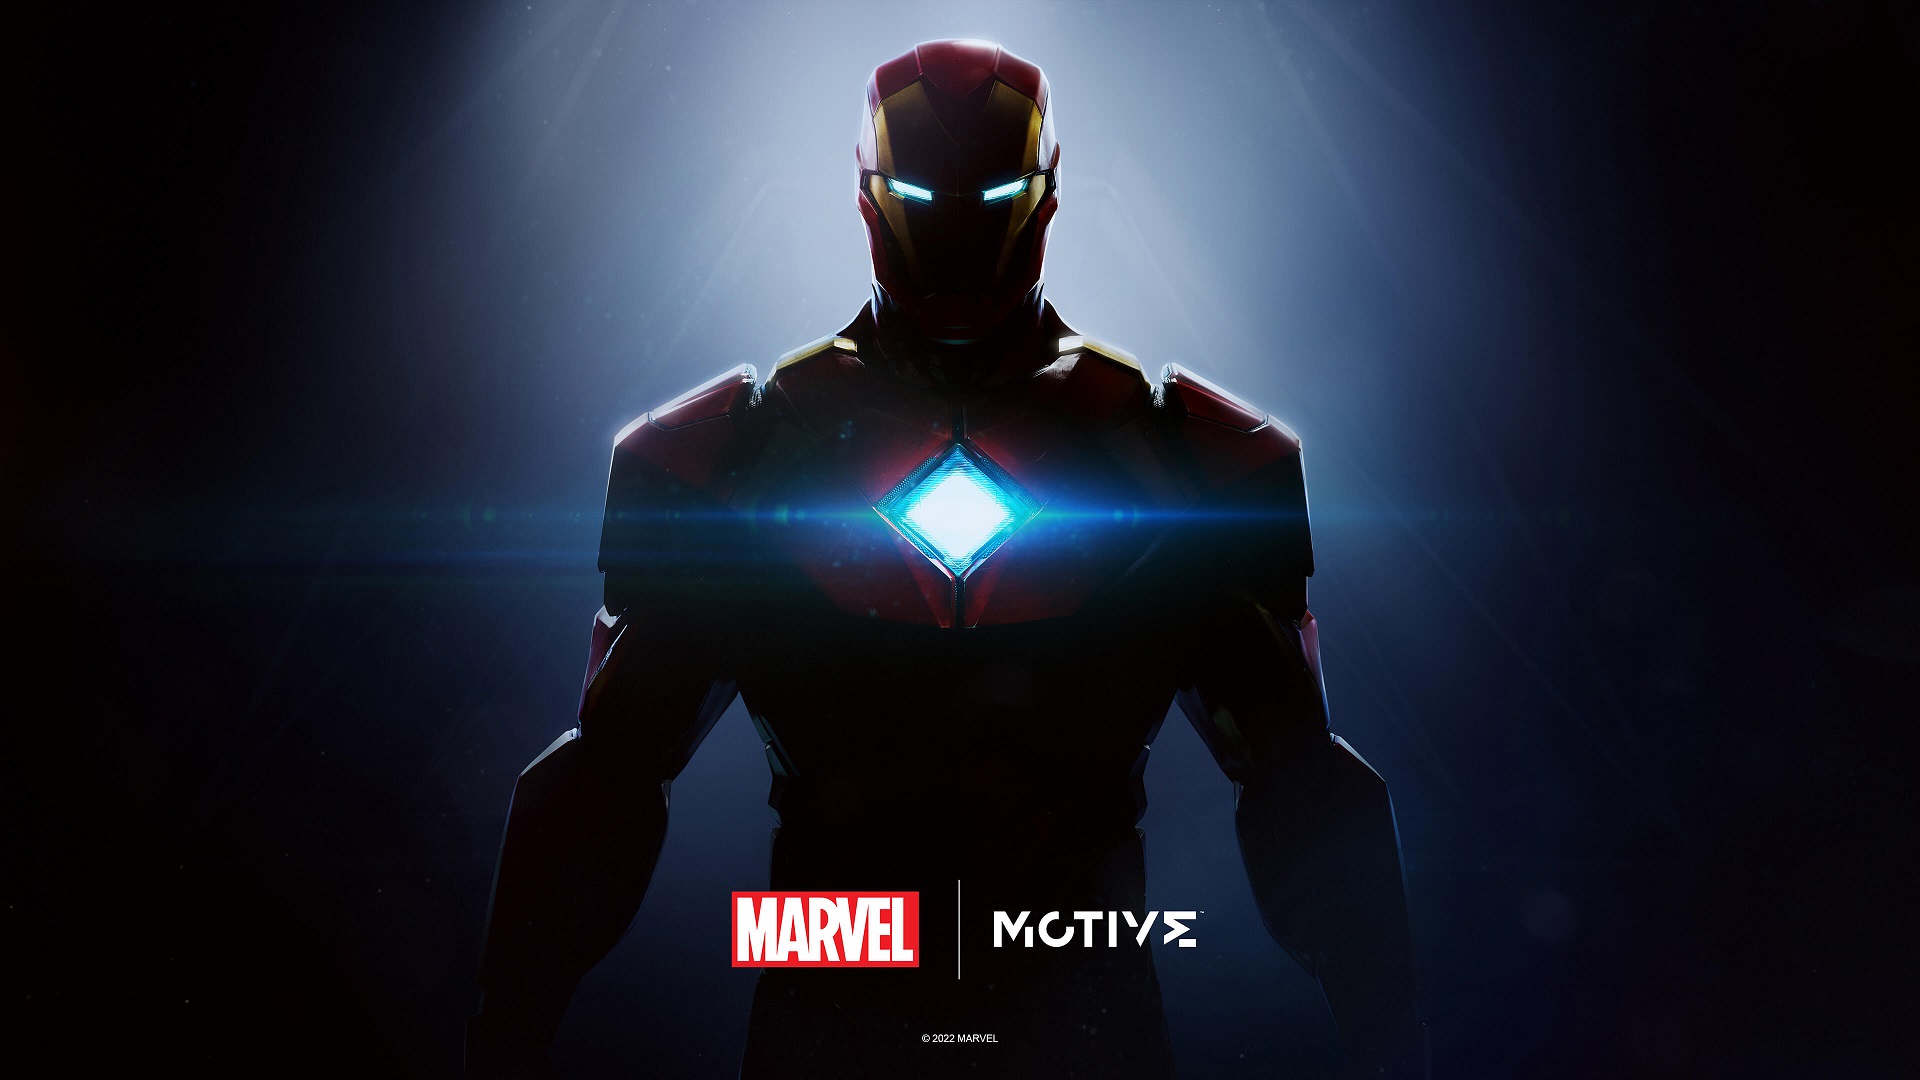 بازی Iron Man استودیو موتیو وارد فاز پلی تست شده است